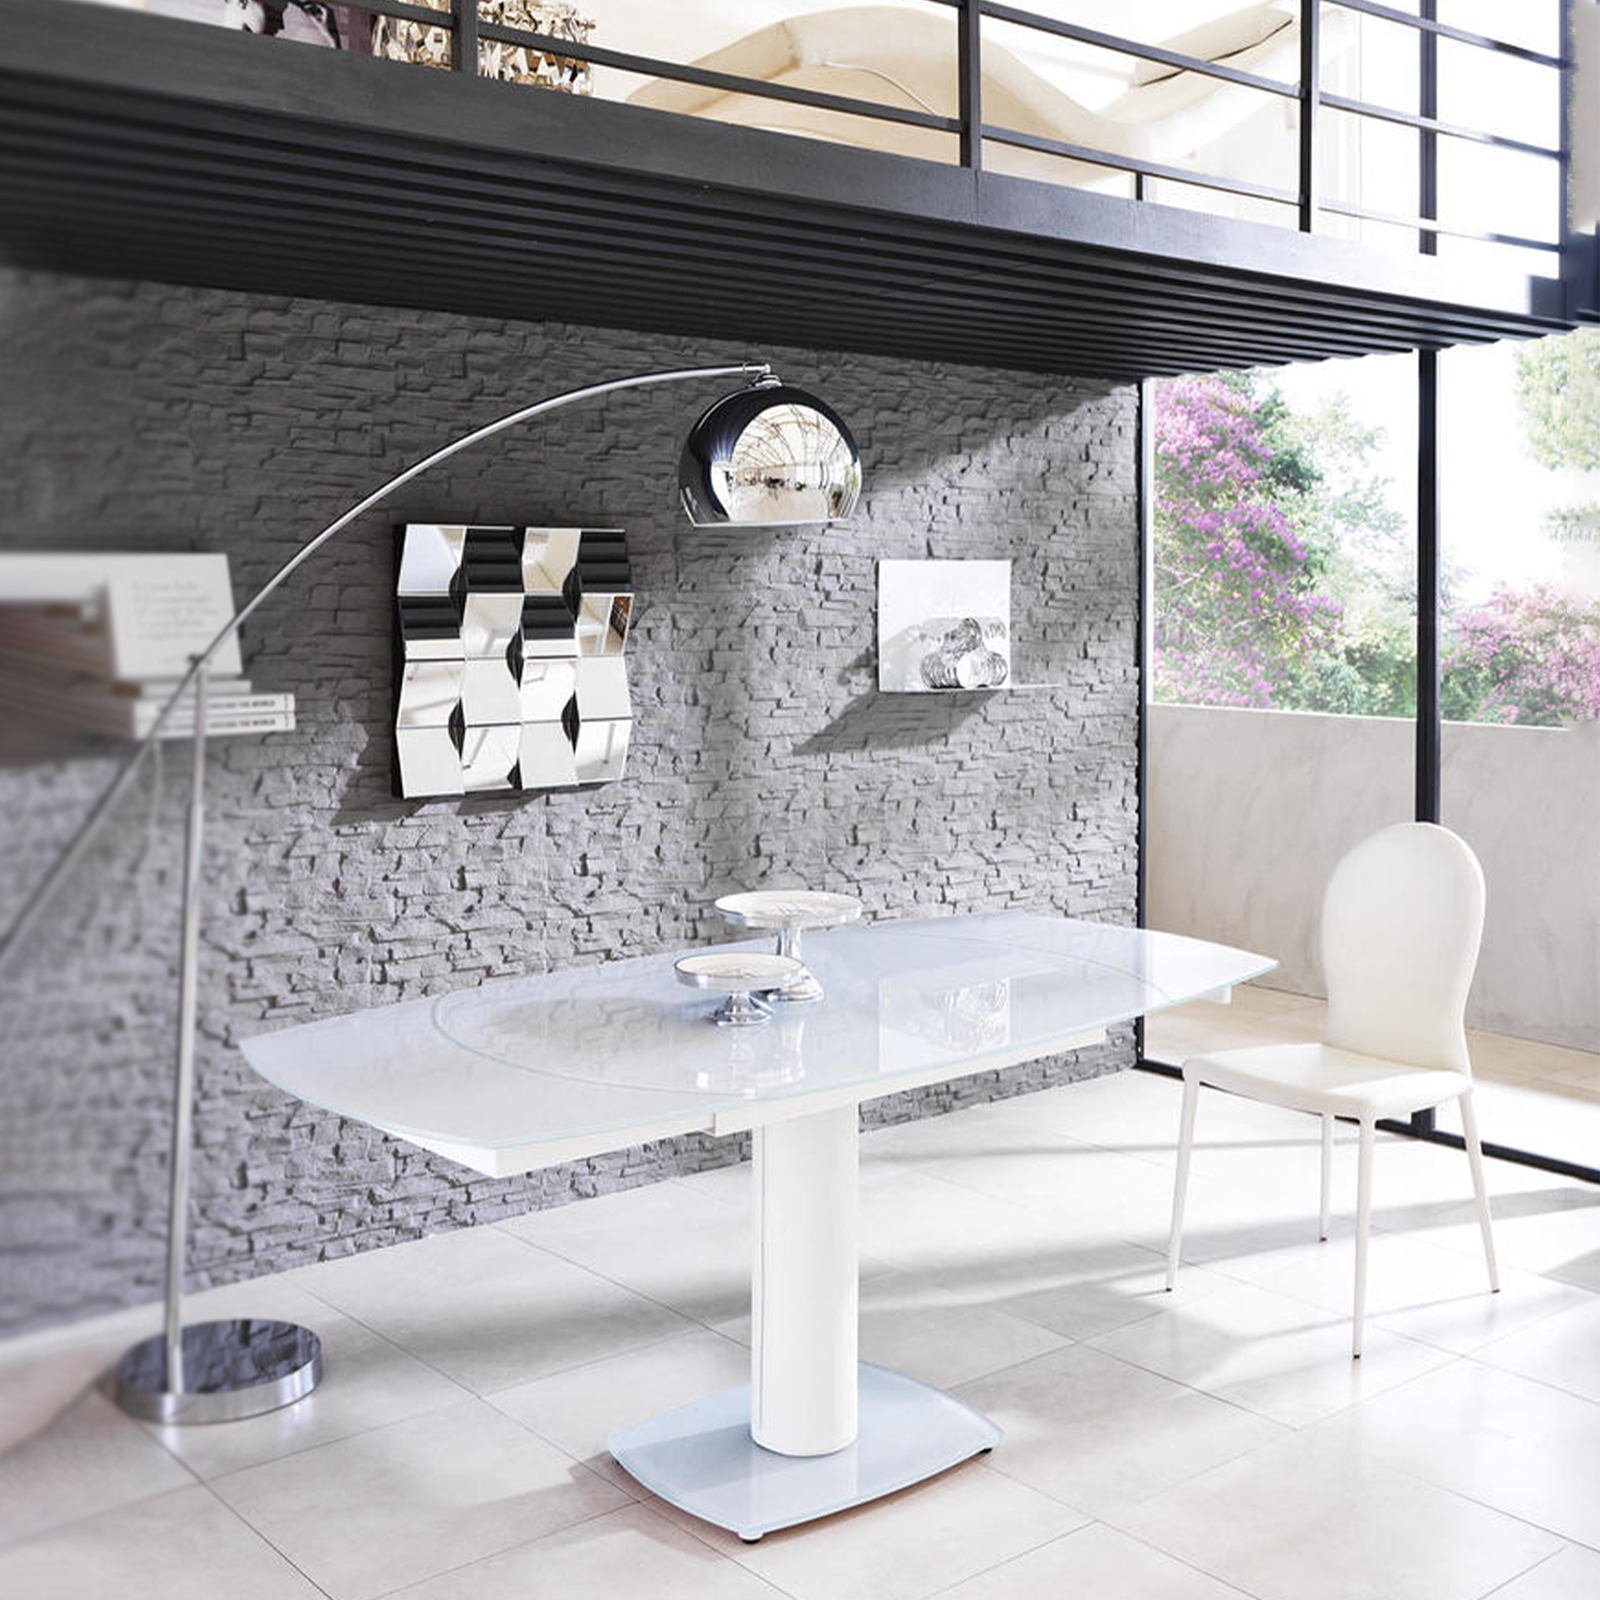 Table extensible "Kyoto" en verre texturé avec pieds en métal 120/180x90 cm 76h